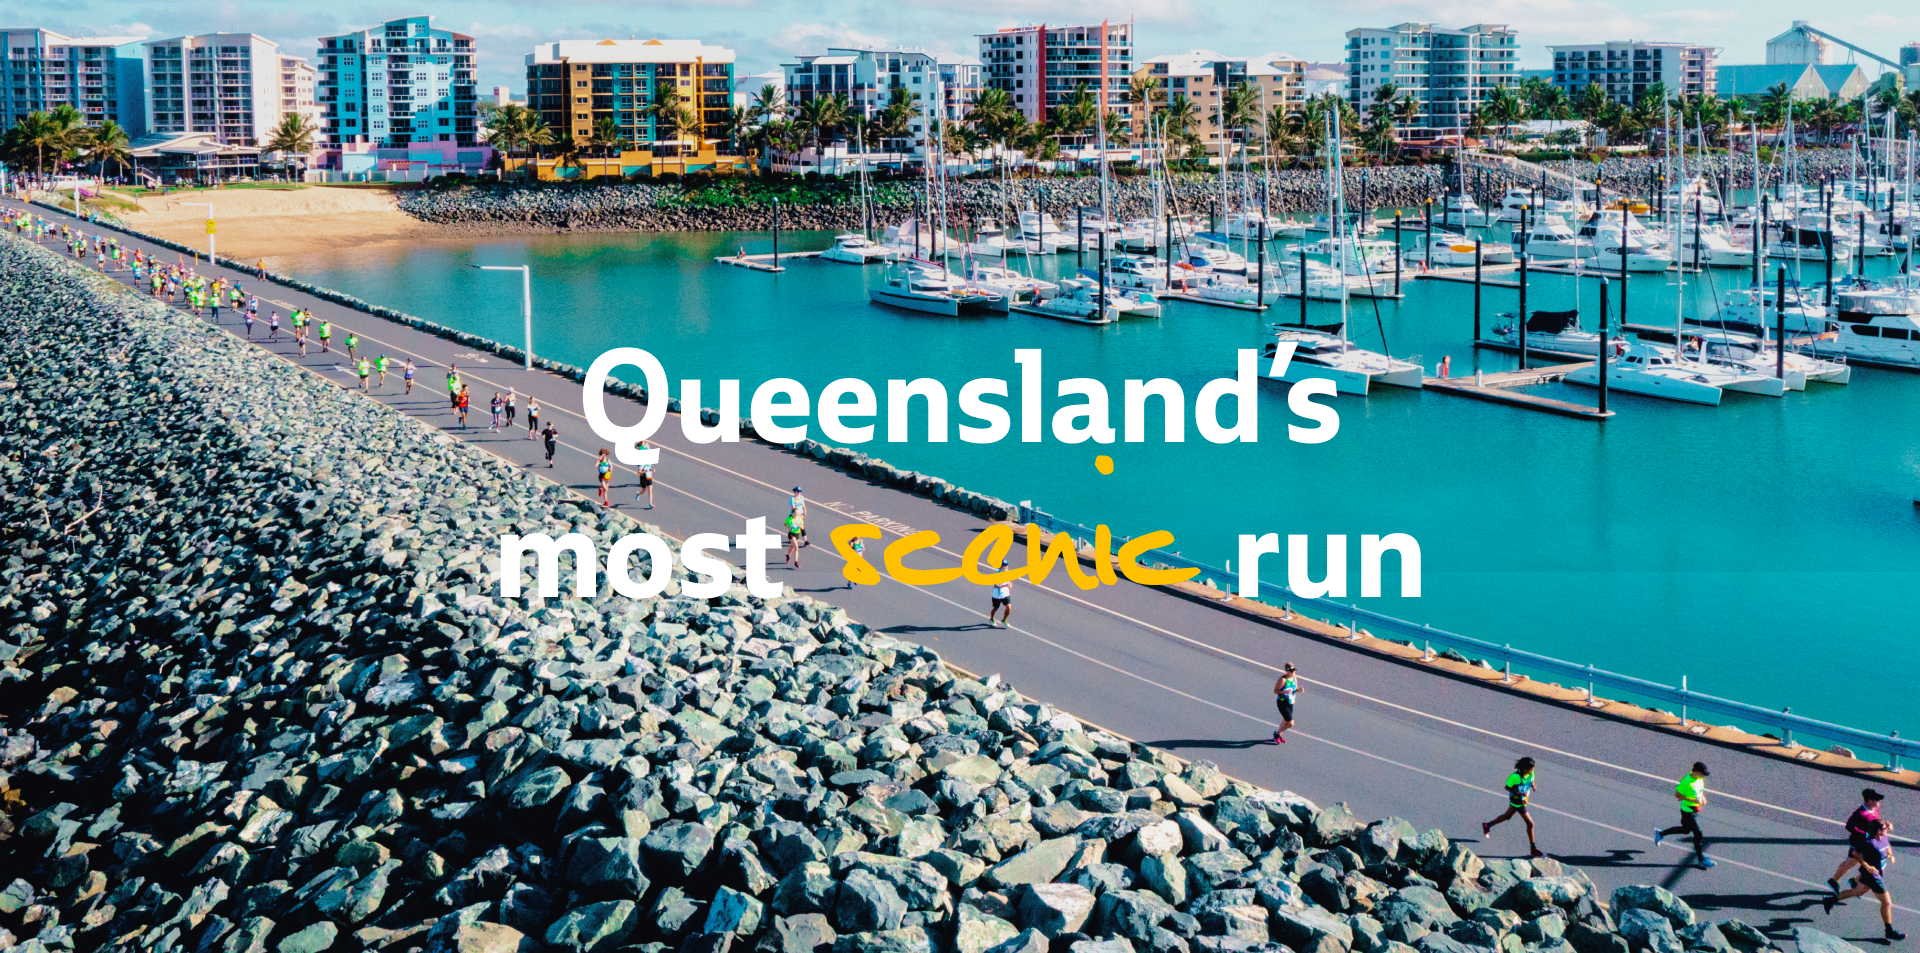 Queensland's most scenic run